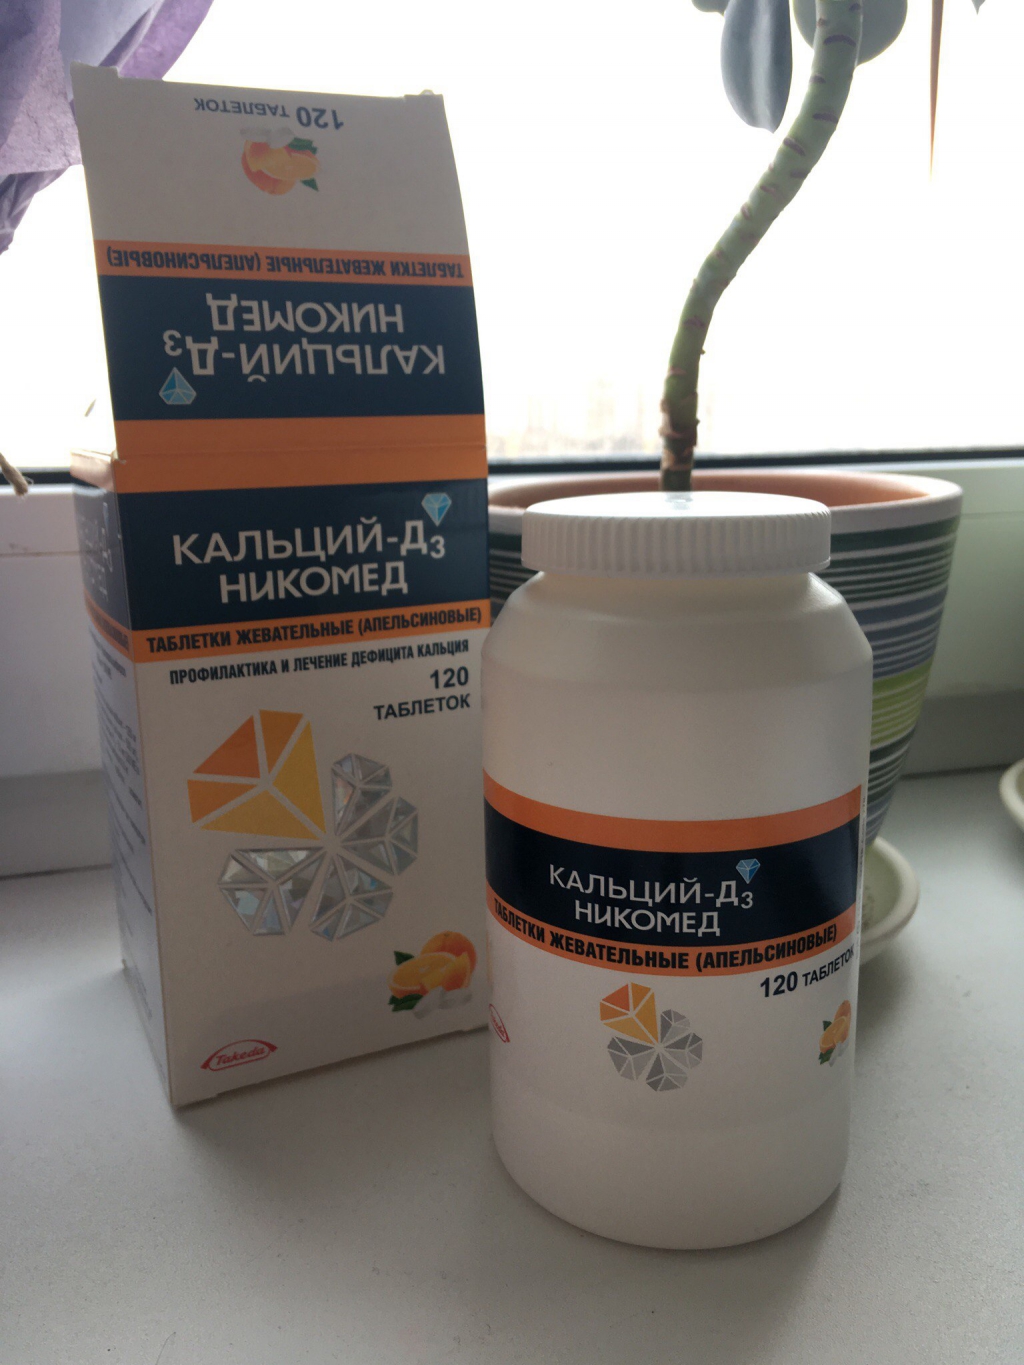 Кальций-д3 никомед - Вкусные и полезные таблетки